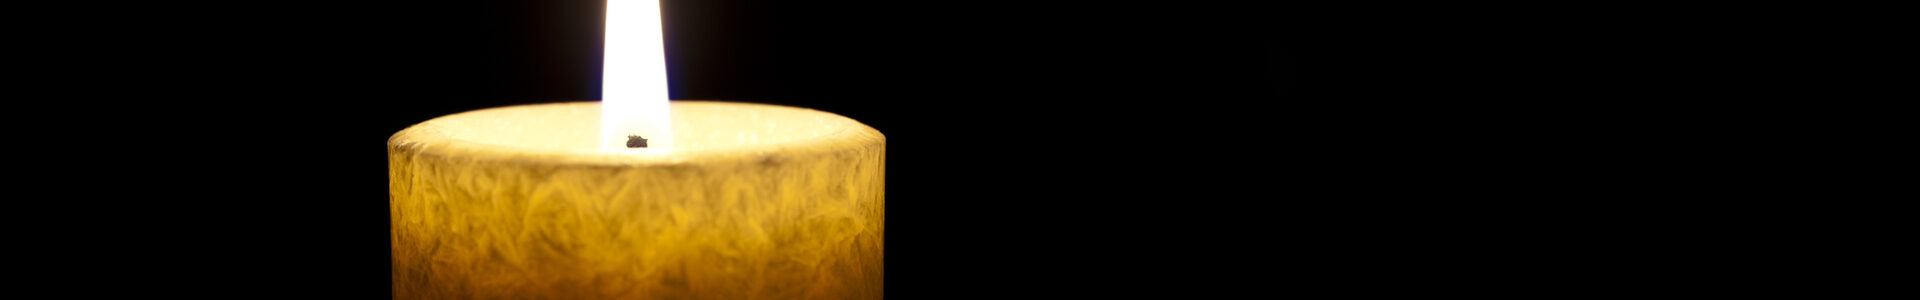 Eine einzelne Kerze brennt vor dunklem Hintergrund